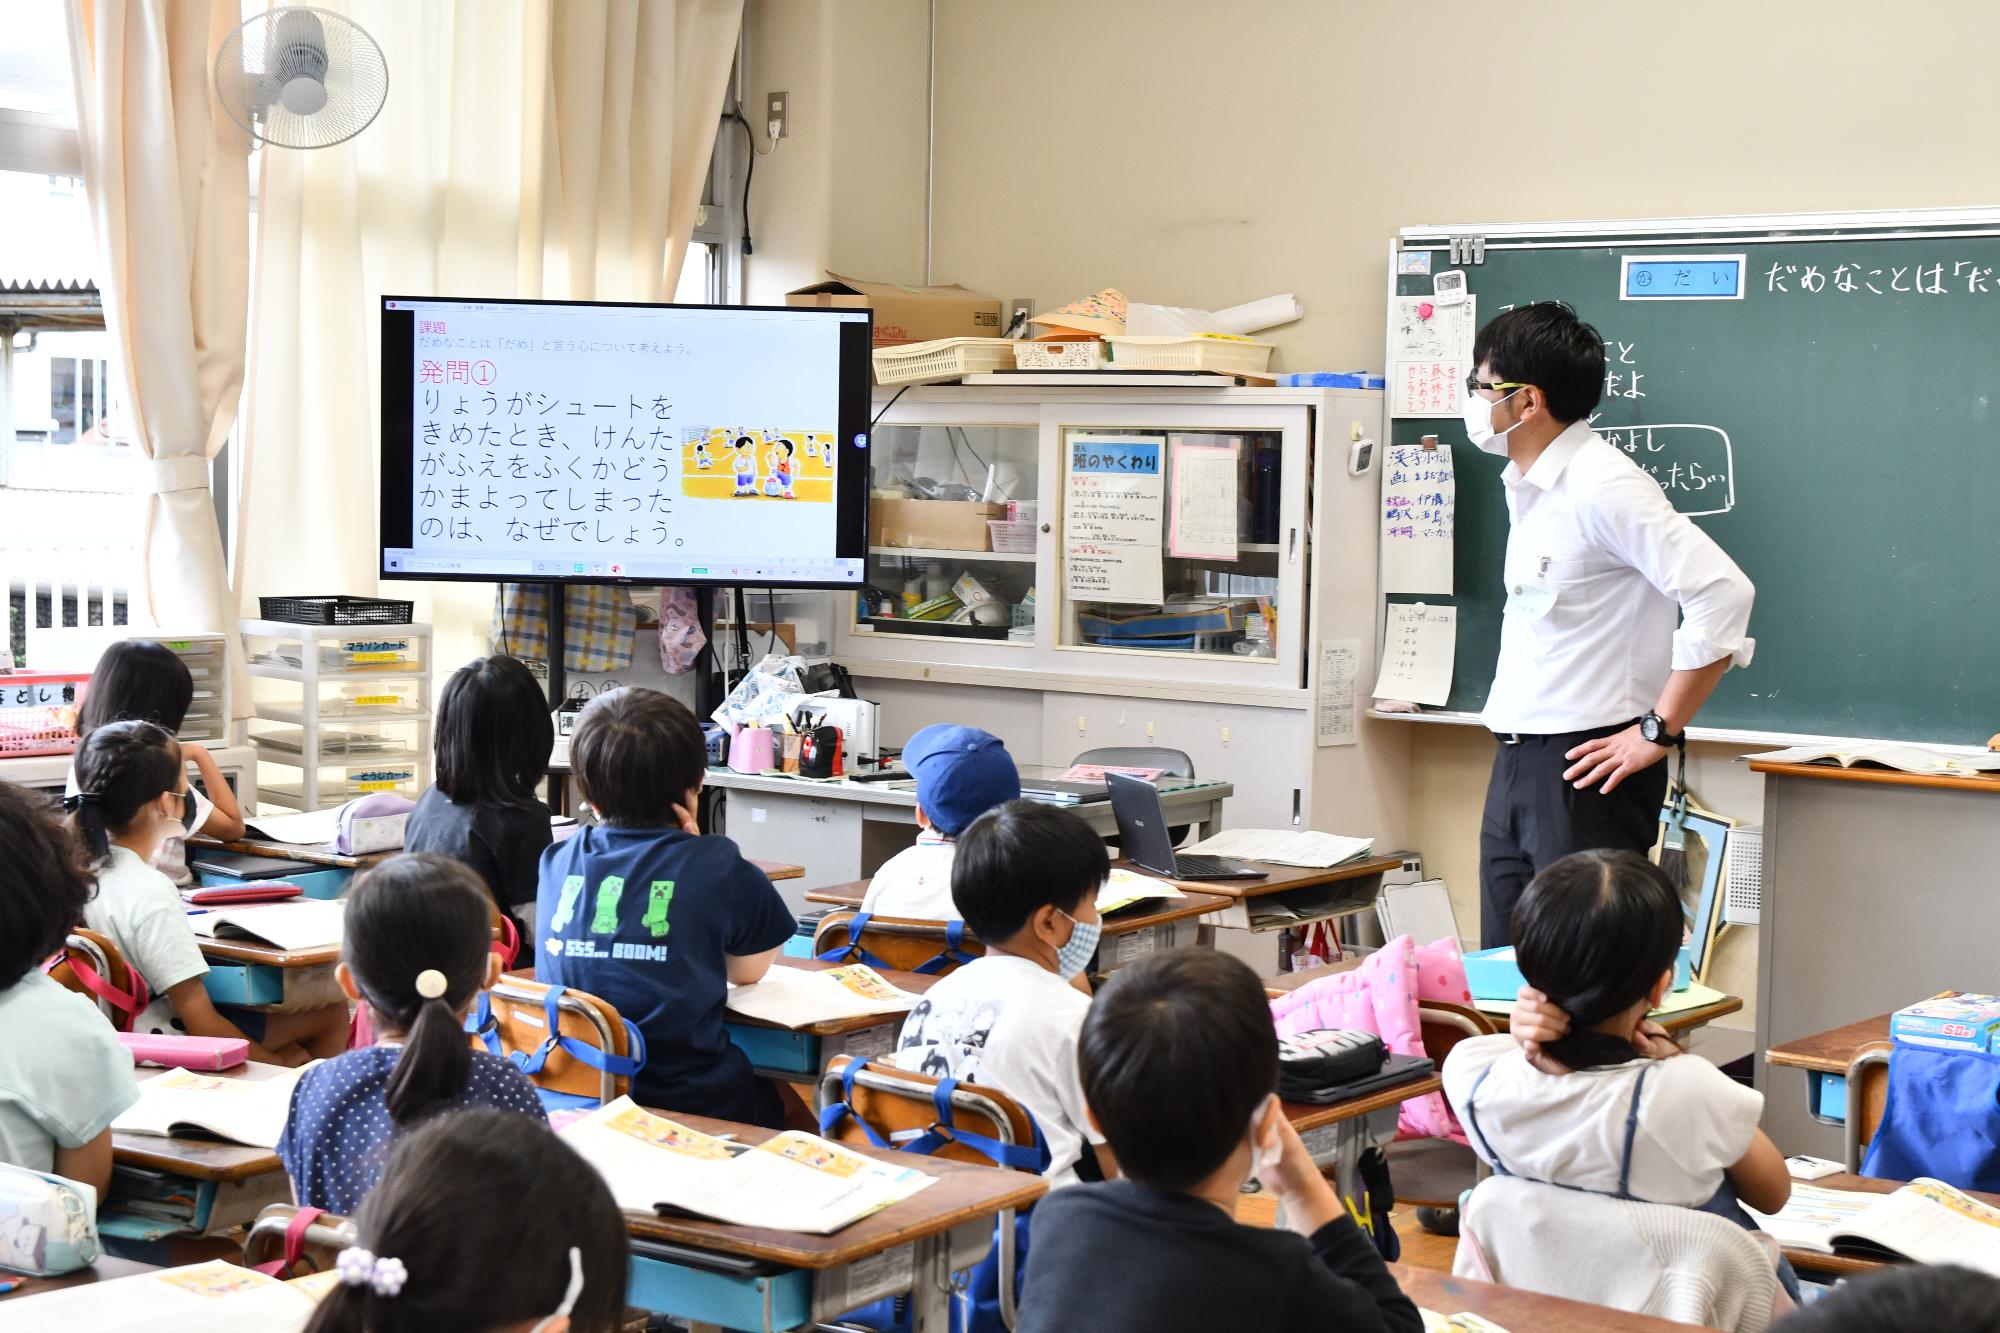 桶川小学校で大型ディスプレイを使用した授業をしている先生と児童の様子